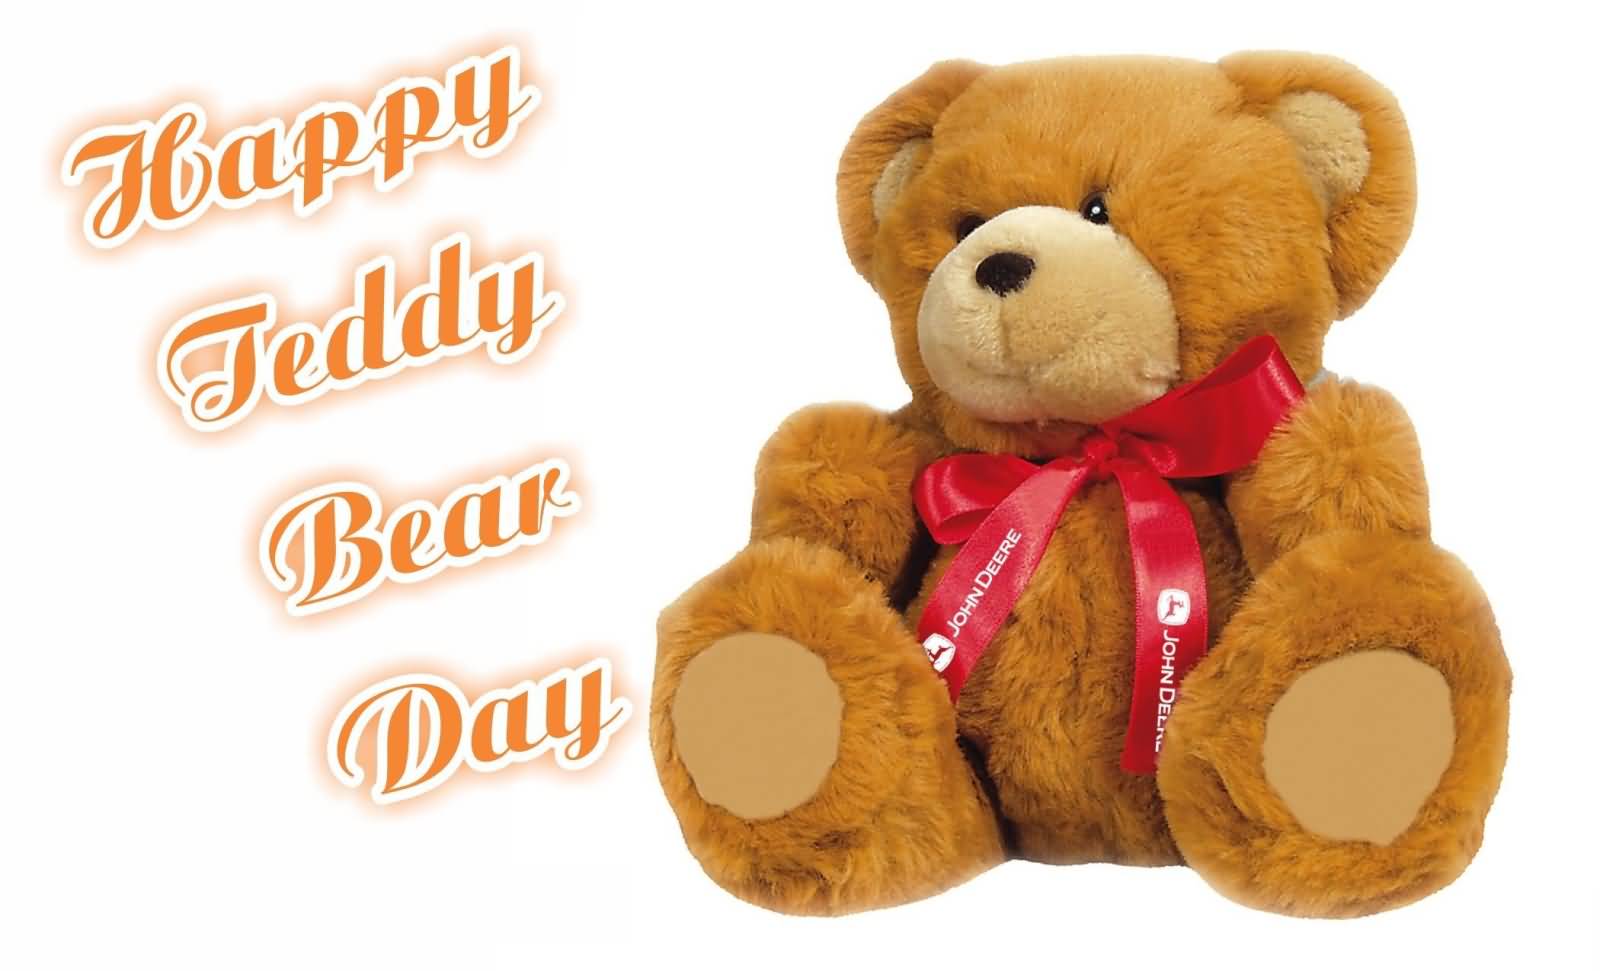 Happy Teddy Bear Day Greeting Card